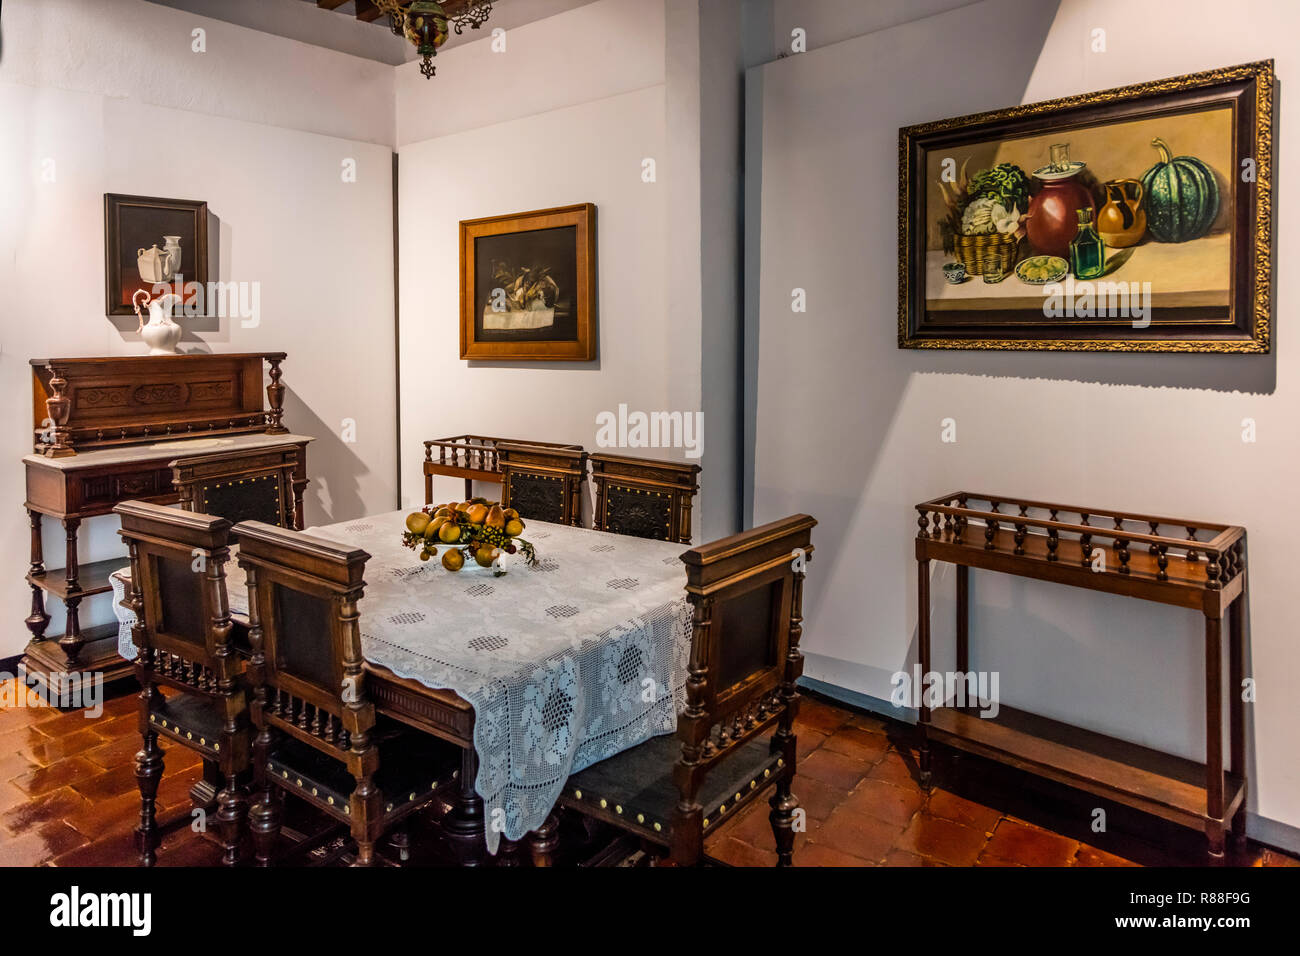 Le Musée Diego Rivera est situé dans sa maison d'enfance - Guanajuato, Mexique Banque D'Images